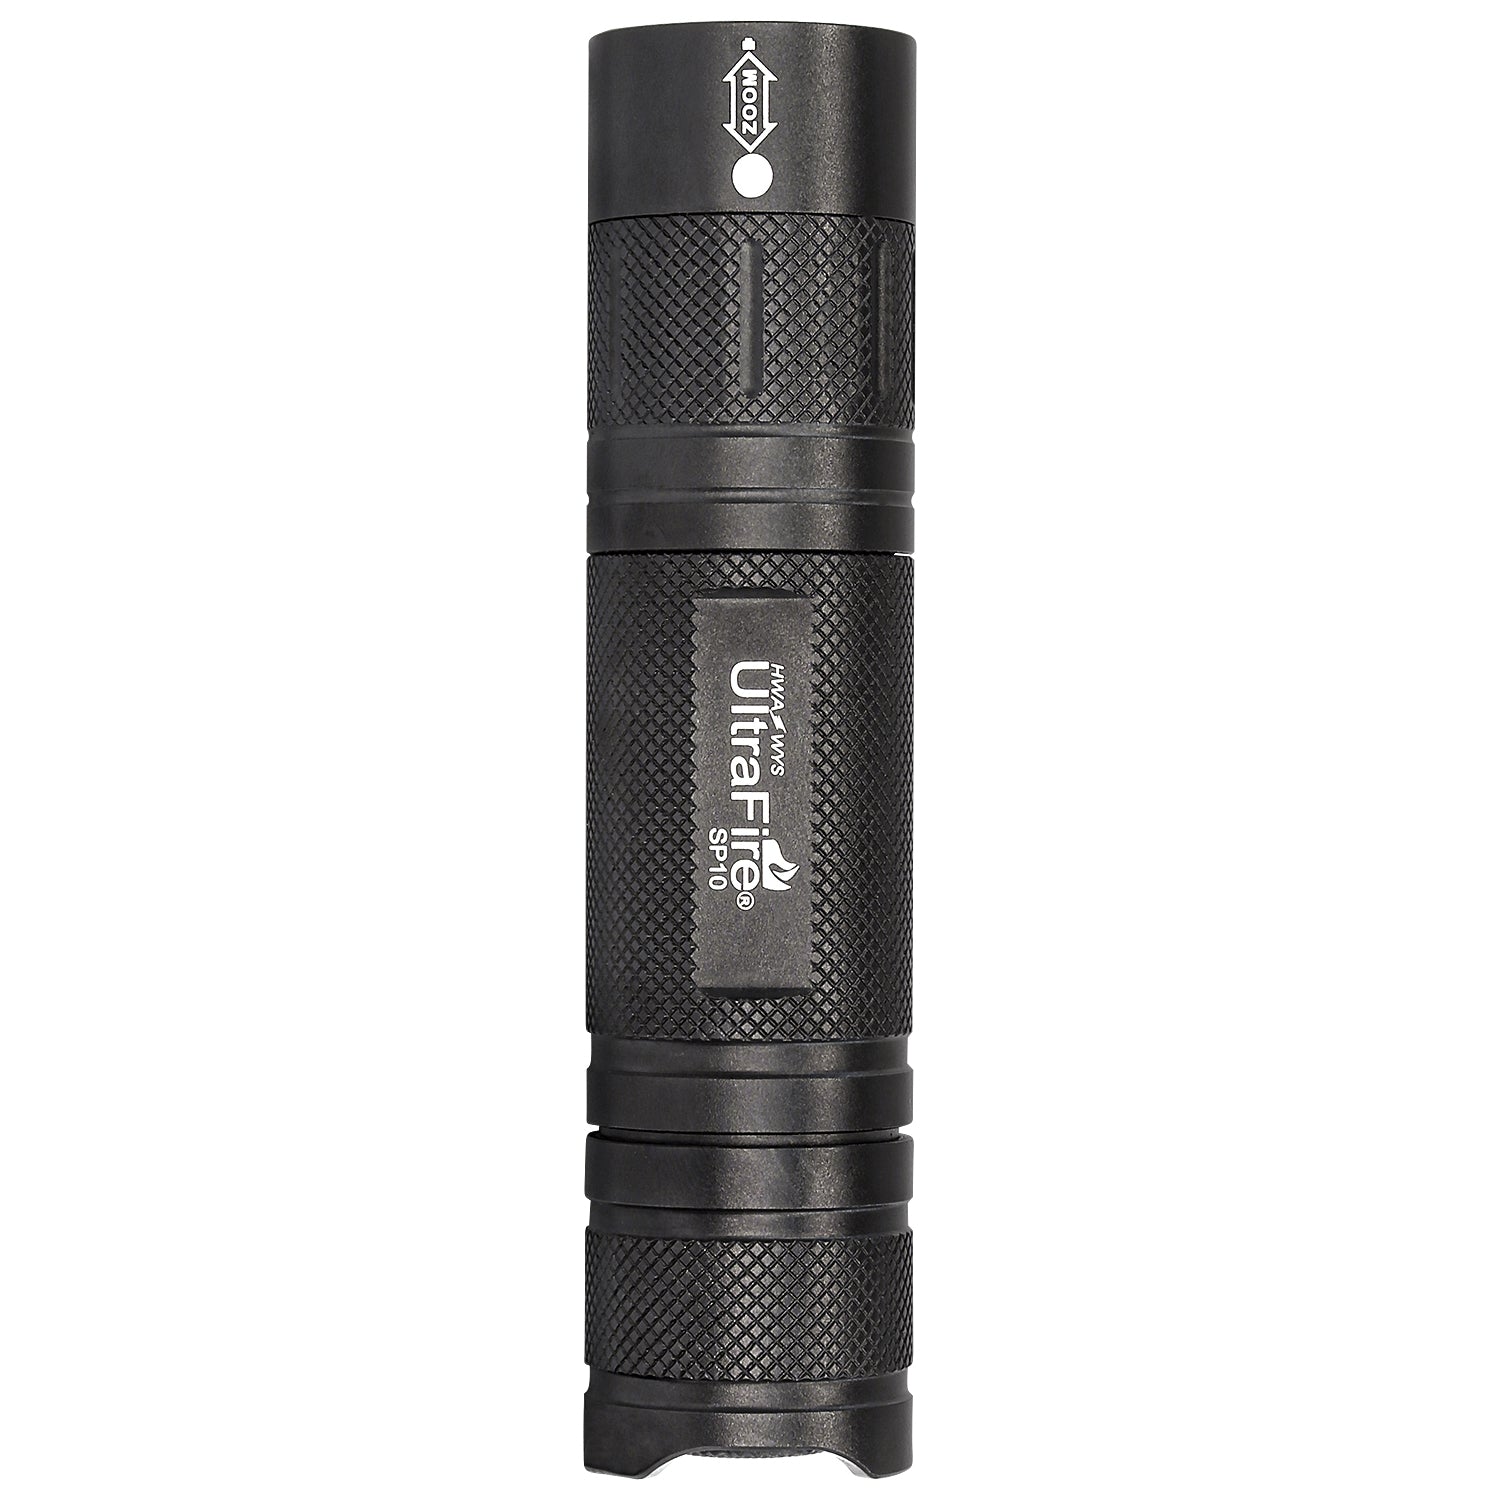 UltraFire SP10 Flashlight